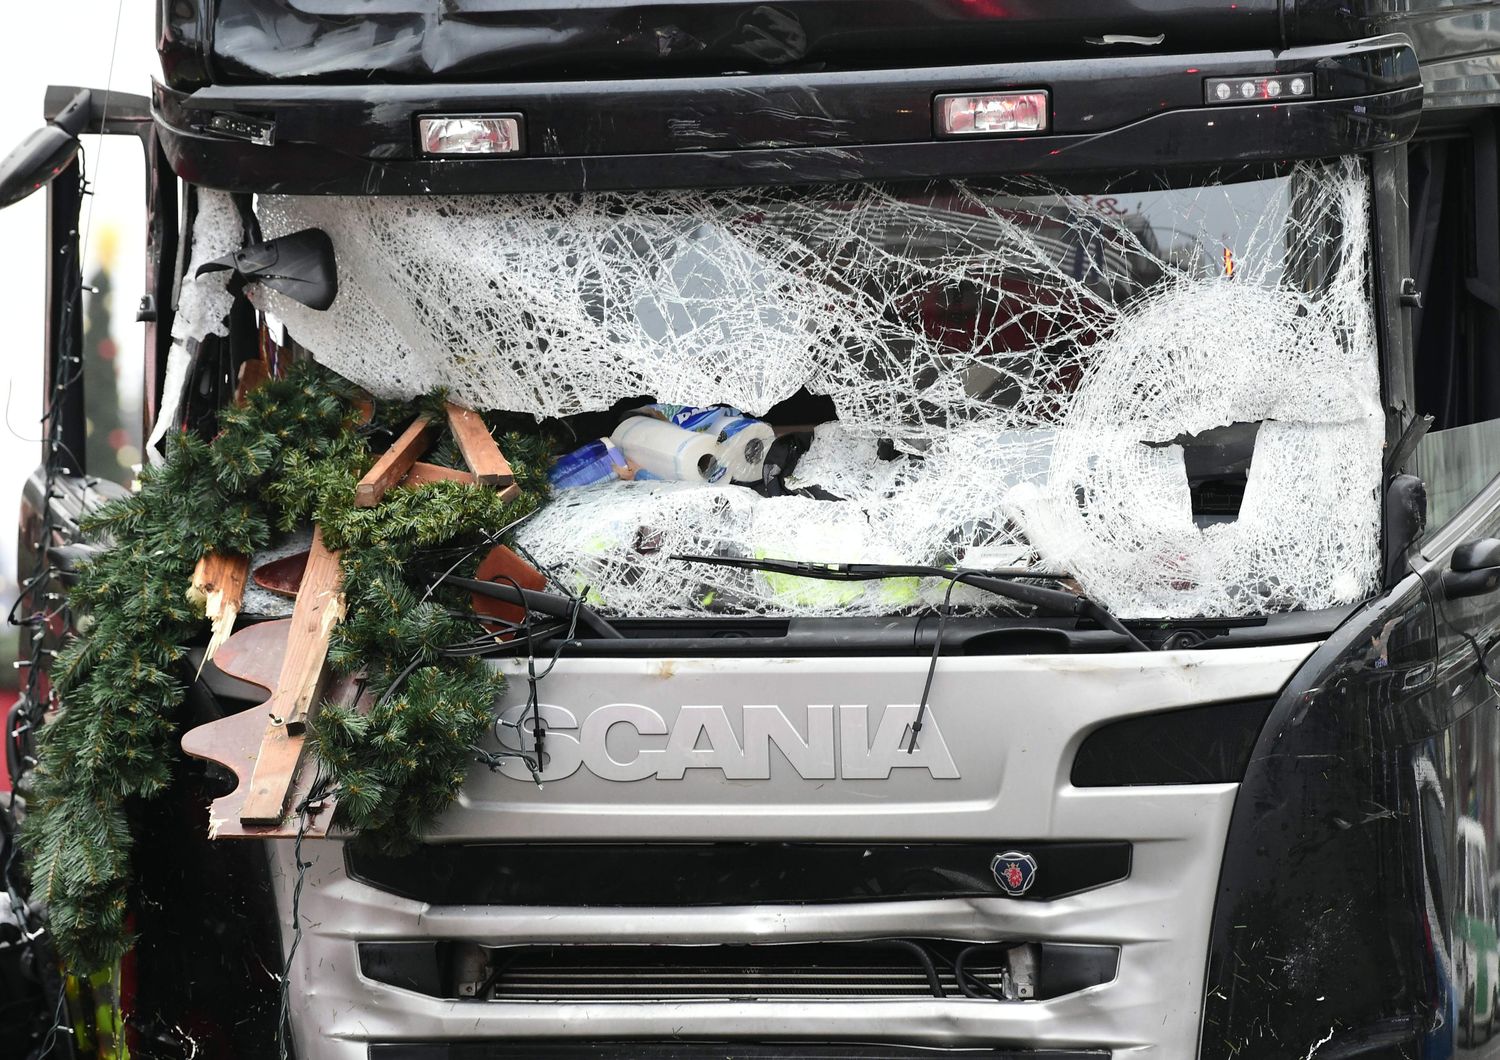 Il camion che si &egrave; schiantato ieri sera contro un affollato mercato di Natale a Charlottemburg. La polizia di Berlino parla di &quot;un atto deliberato, un presunto attentato&quot; che ha fatto 12 morti e 48 feriti, di cui alcuni in gravi condizioni. (foto Afp)&nbsp;